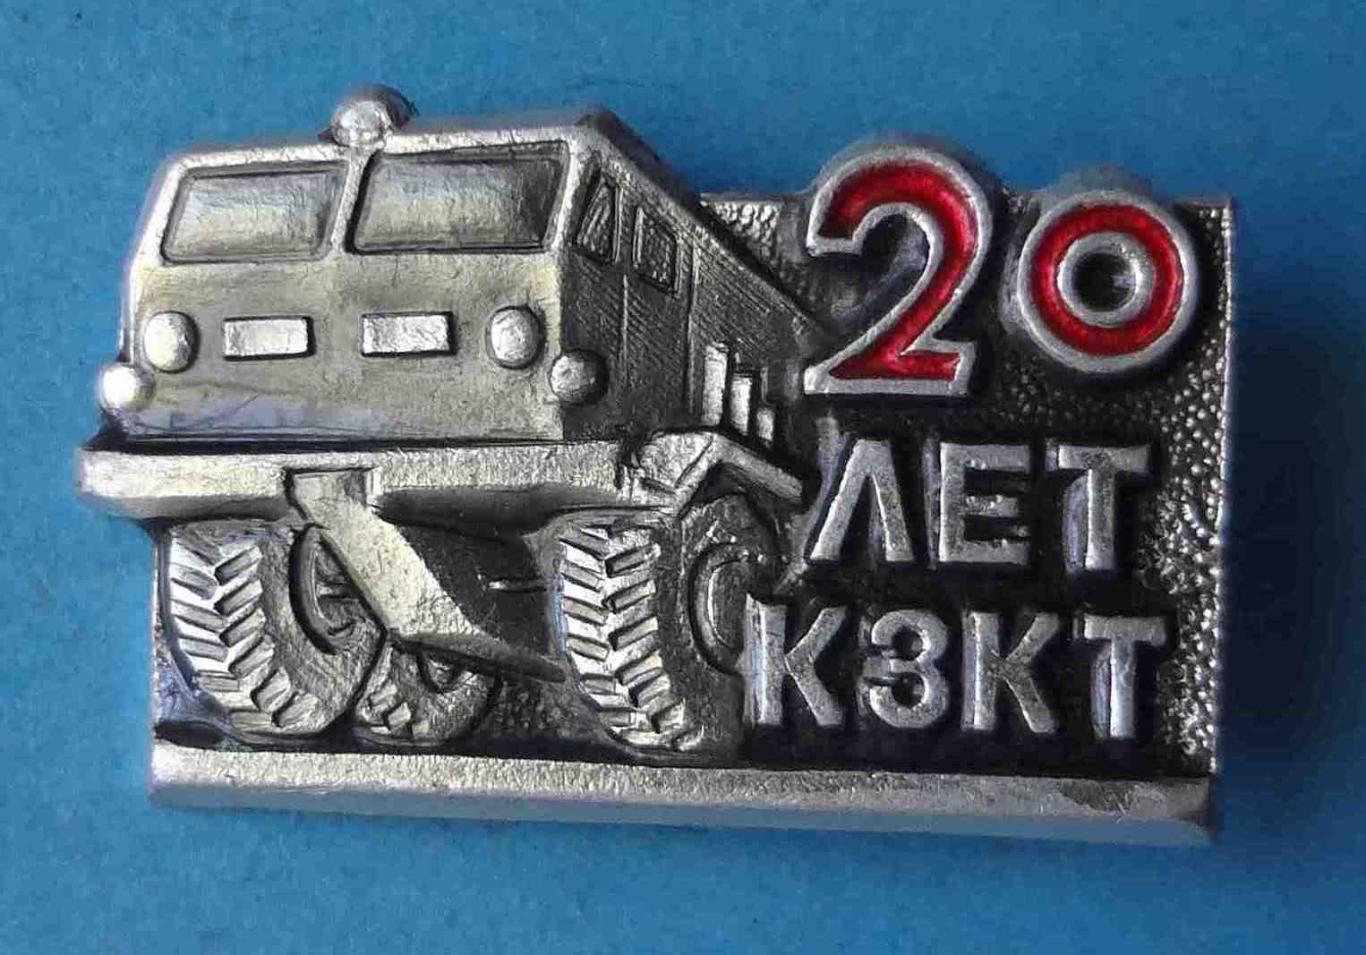 20 лет КЗКТ авто Курганский завод колёсных тягачей (29)